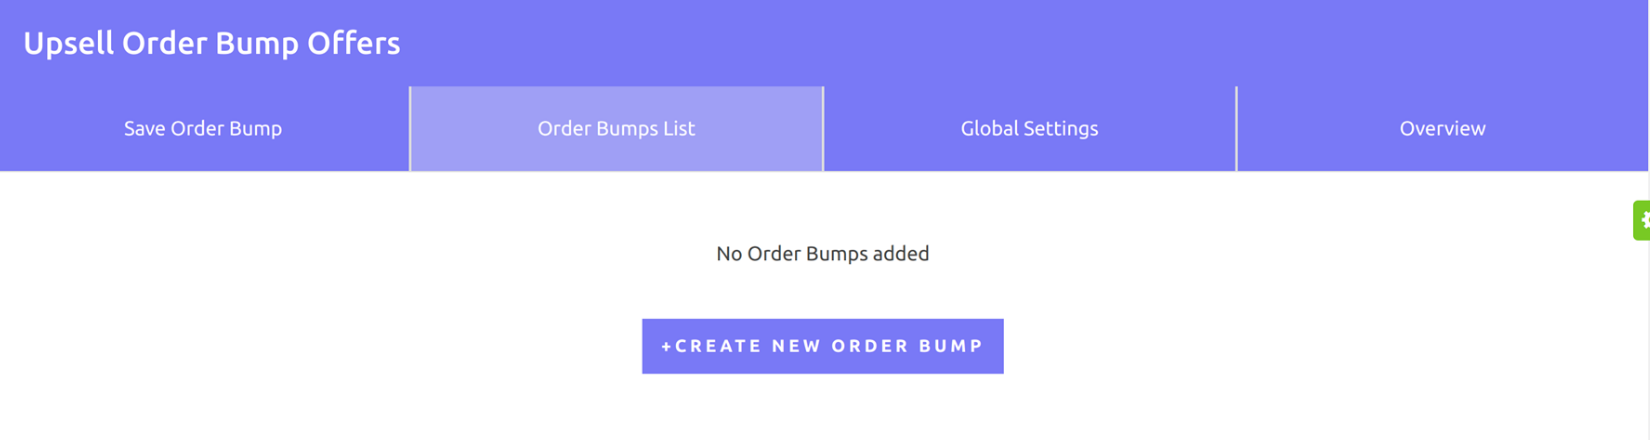 order bump list